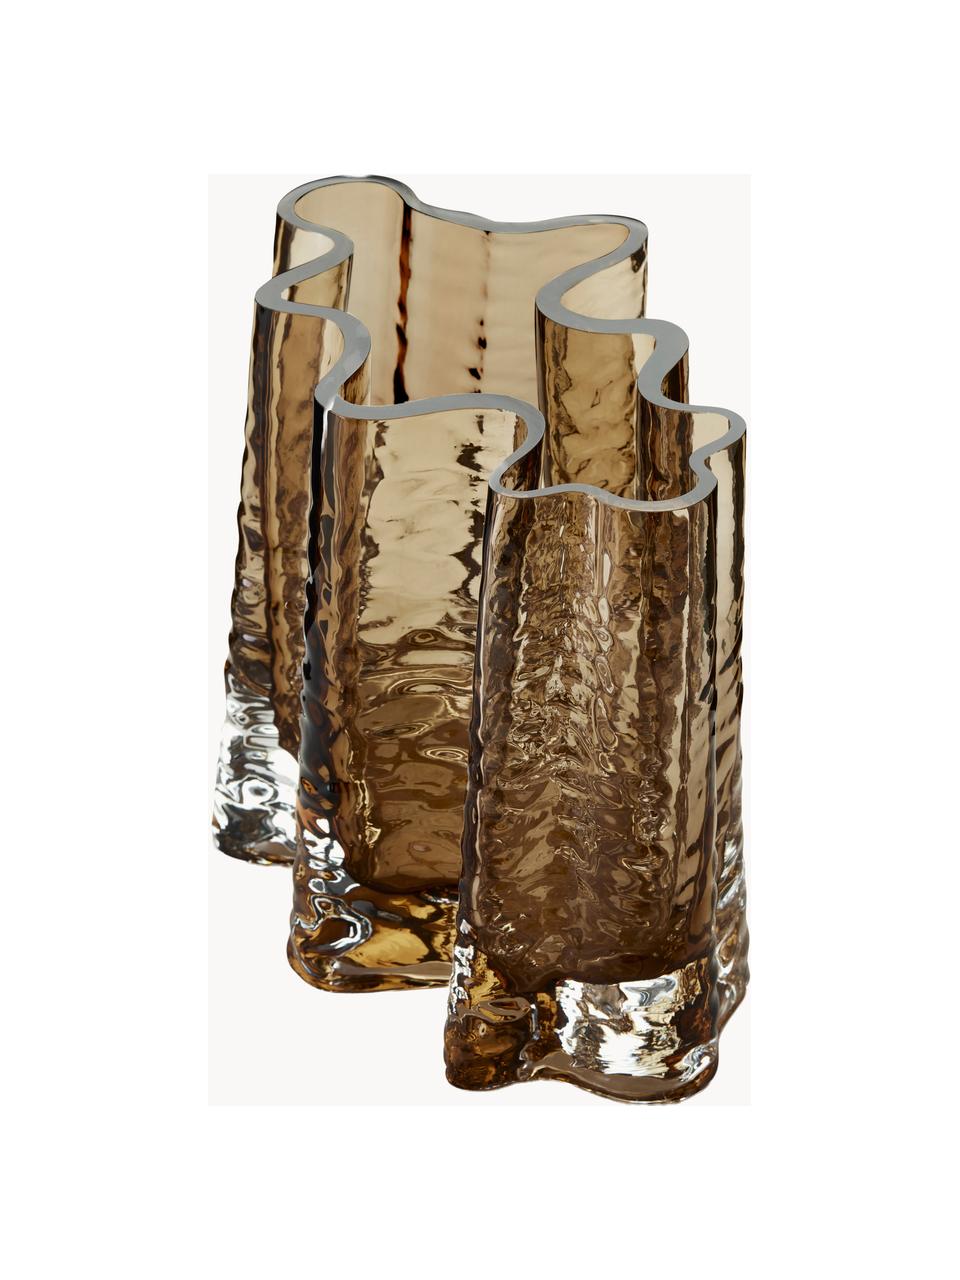 Ručne fúkaná sklenená váza so štruktúrovaným povrchom Gry, V 19 cm, Fúkané sklo, Hnedá, polopriehľadná, Š 24 x V 19 cm